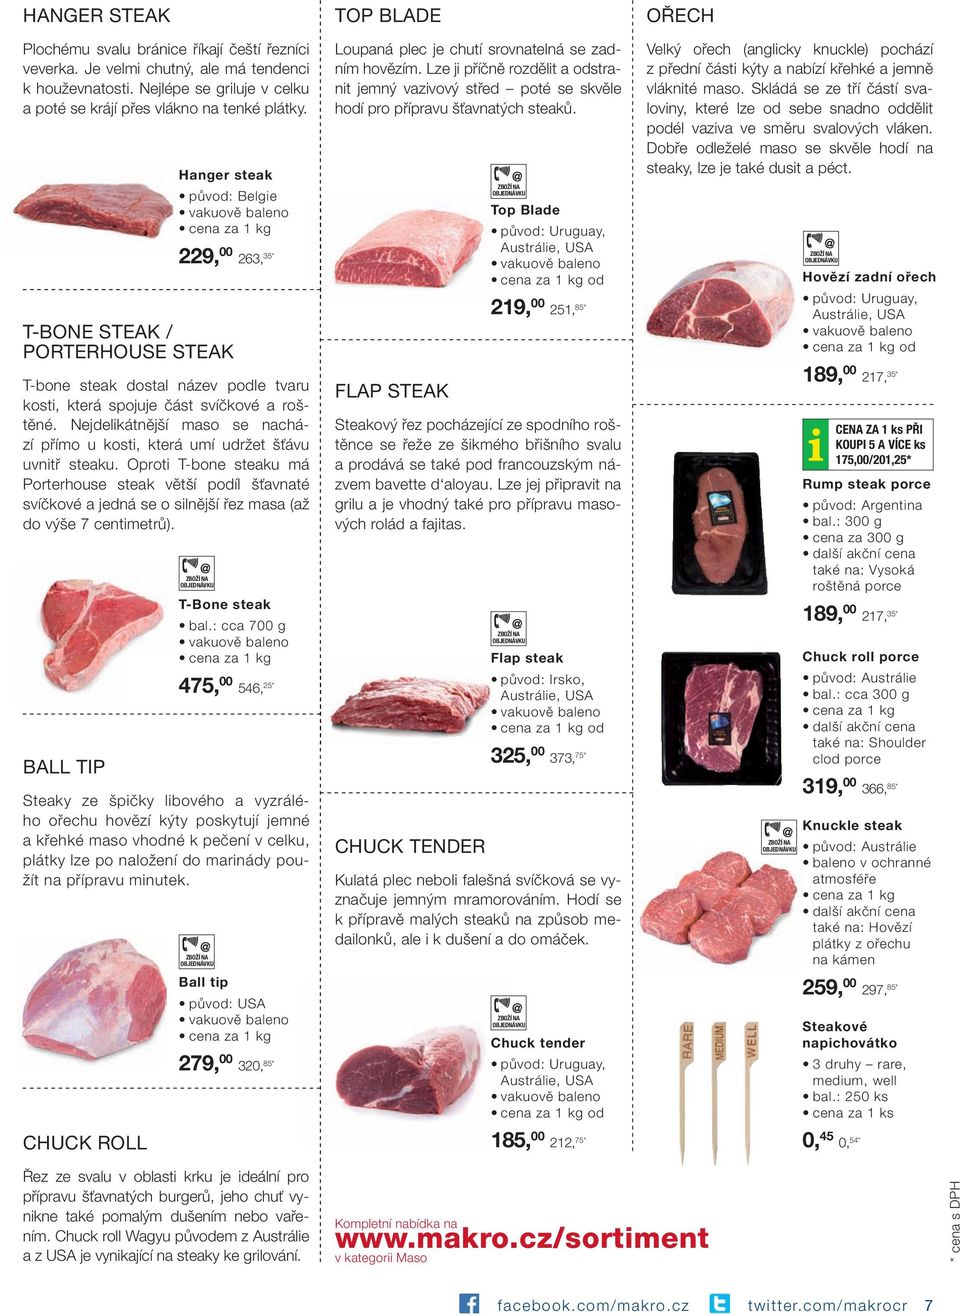 Nejdelikátnější maso se nachází přímo u kosti, která umí udržet šťávu uvnitř steaku.